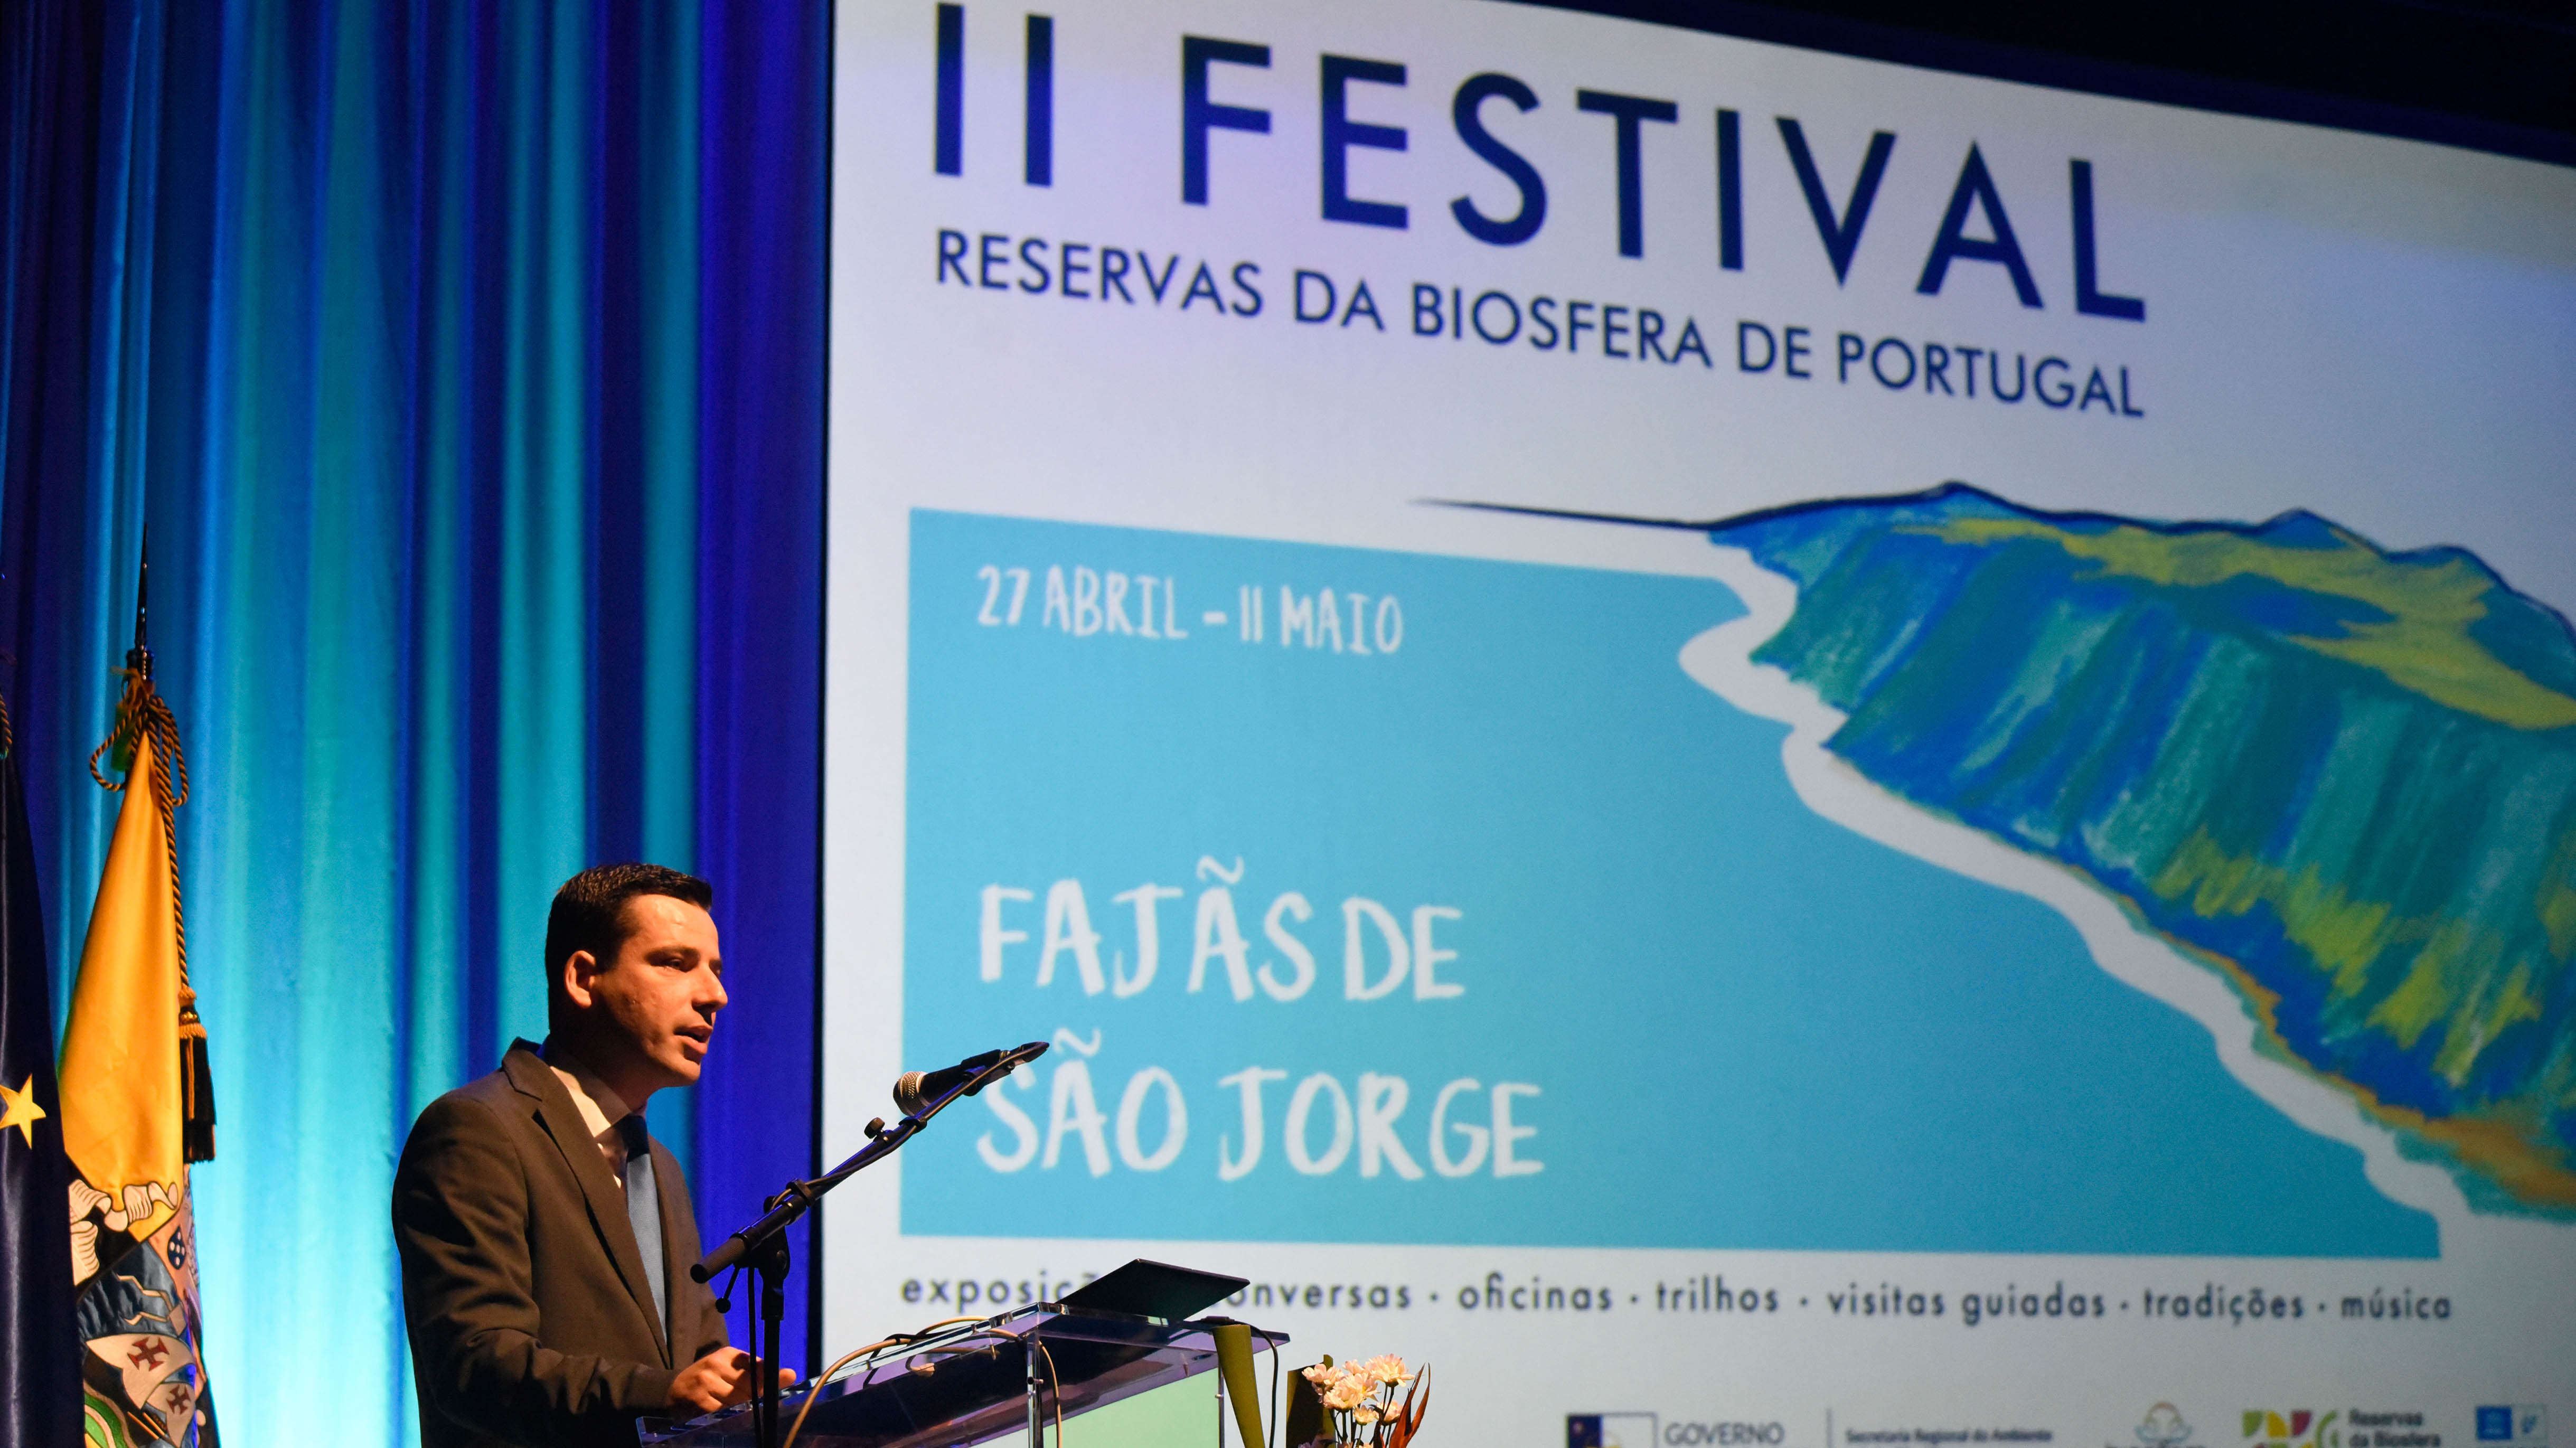  Abertura do Seminário “Territórios Sustentáveis, comunidades resilientes”, no âmbito do II Festival das Reservas da Biosfera de Portugal